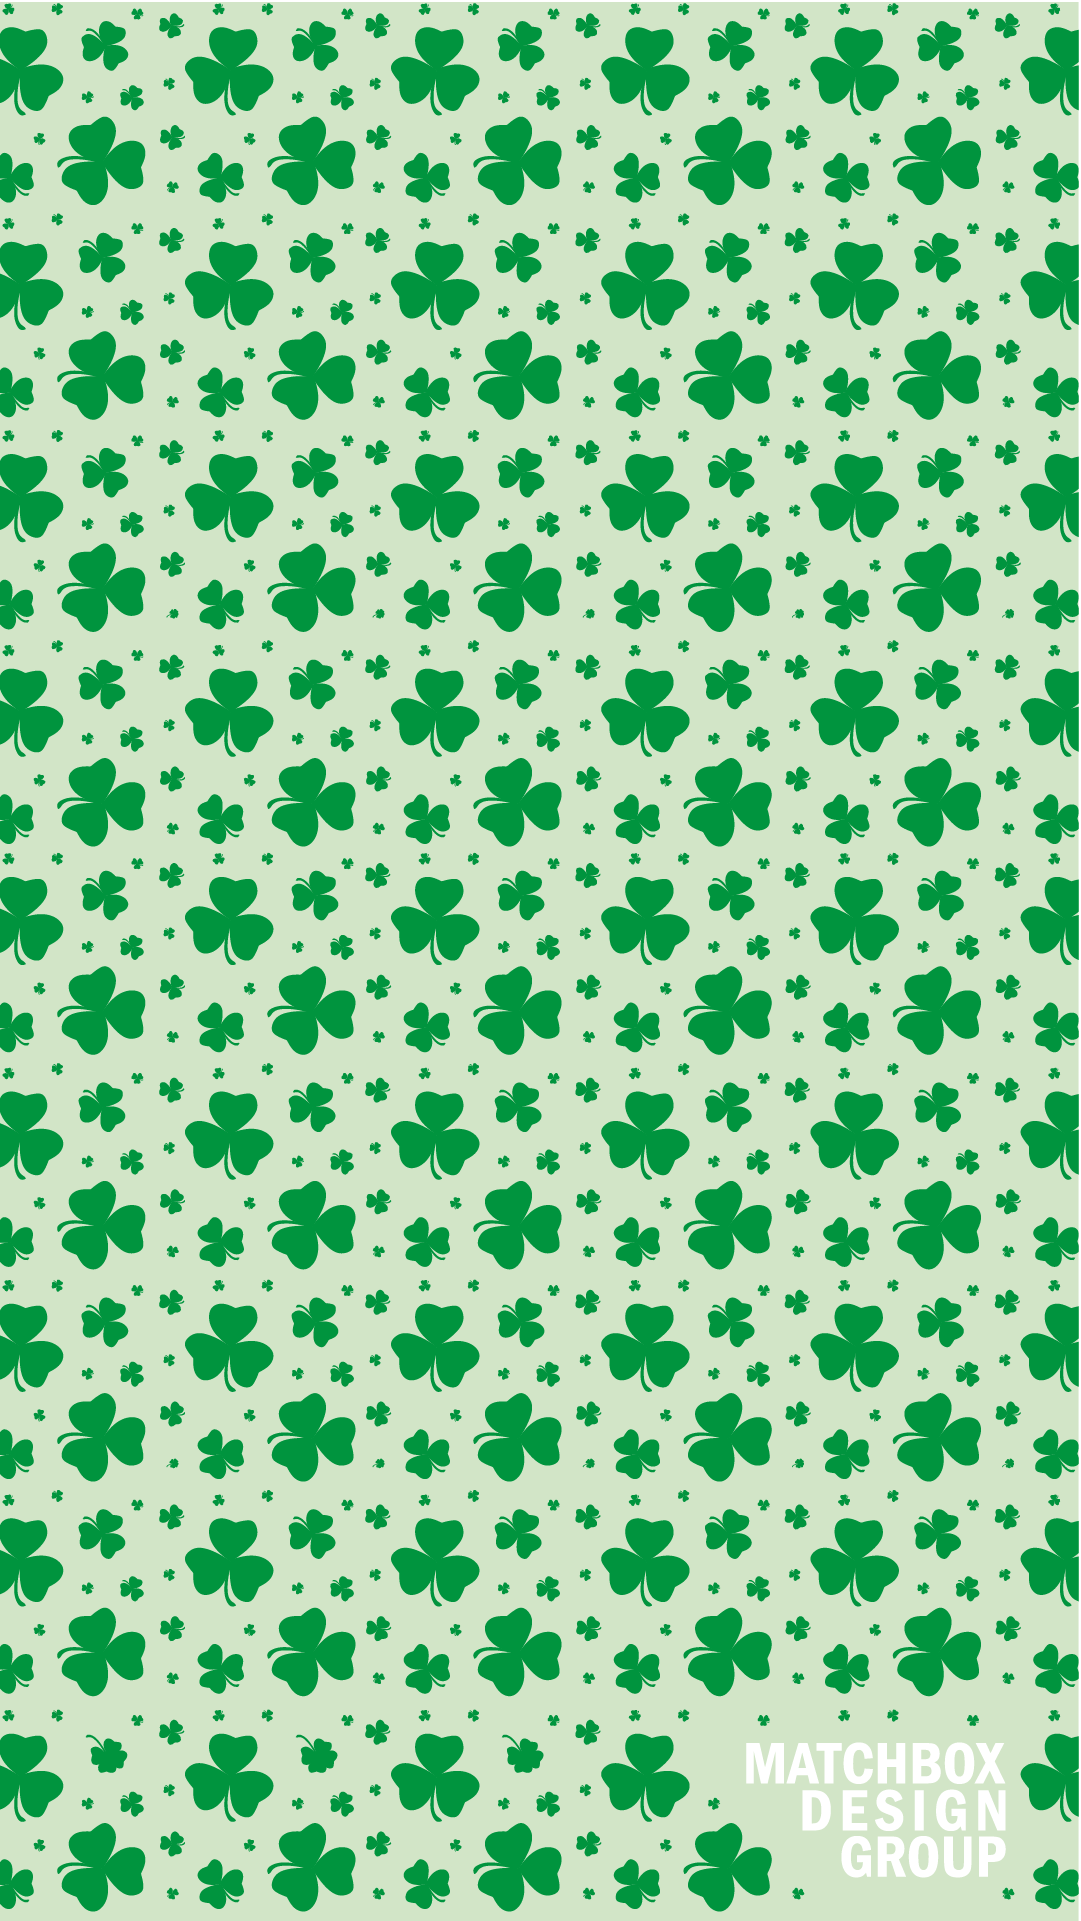 St. Patrick's Day Wallpaper. Matchbox .matchboxdesigngroup.com